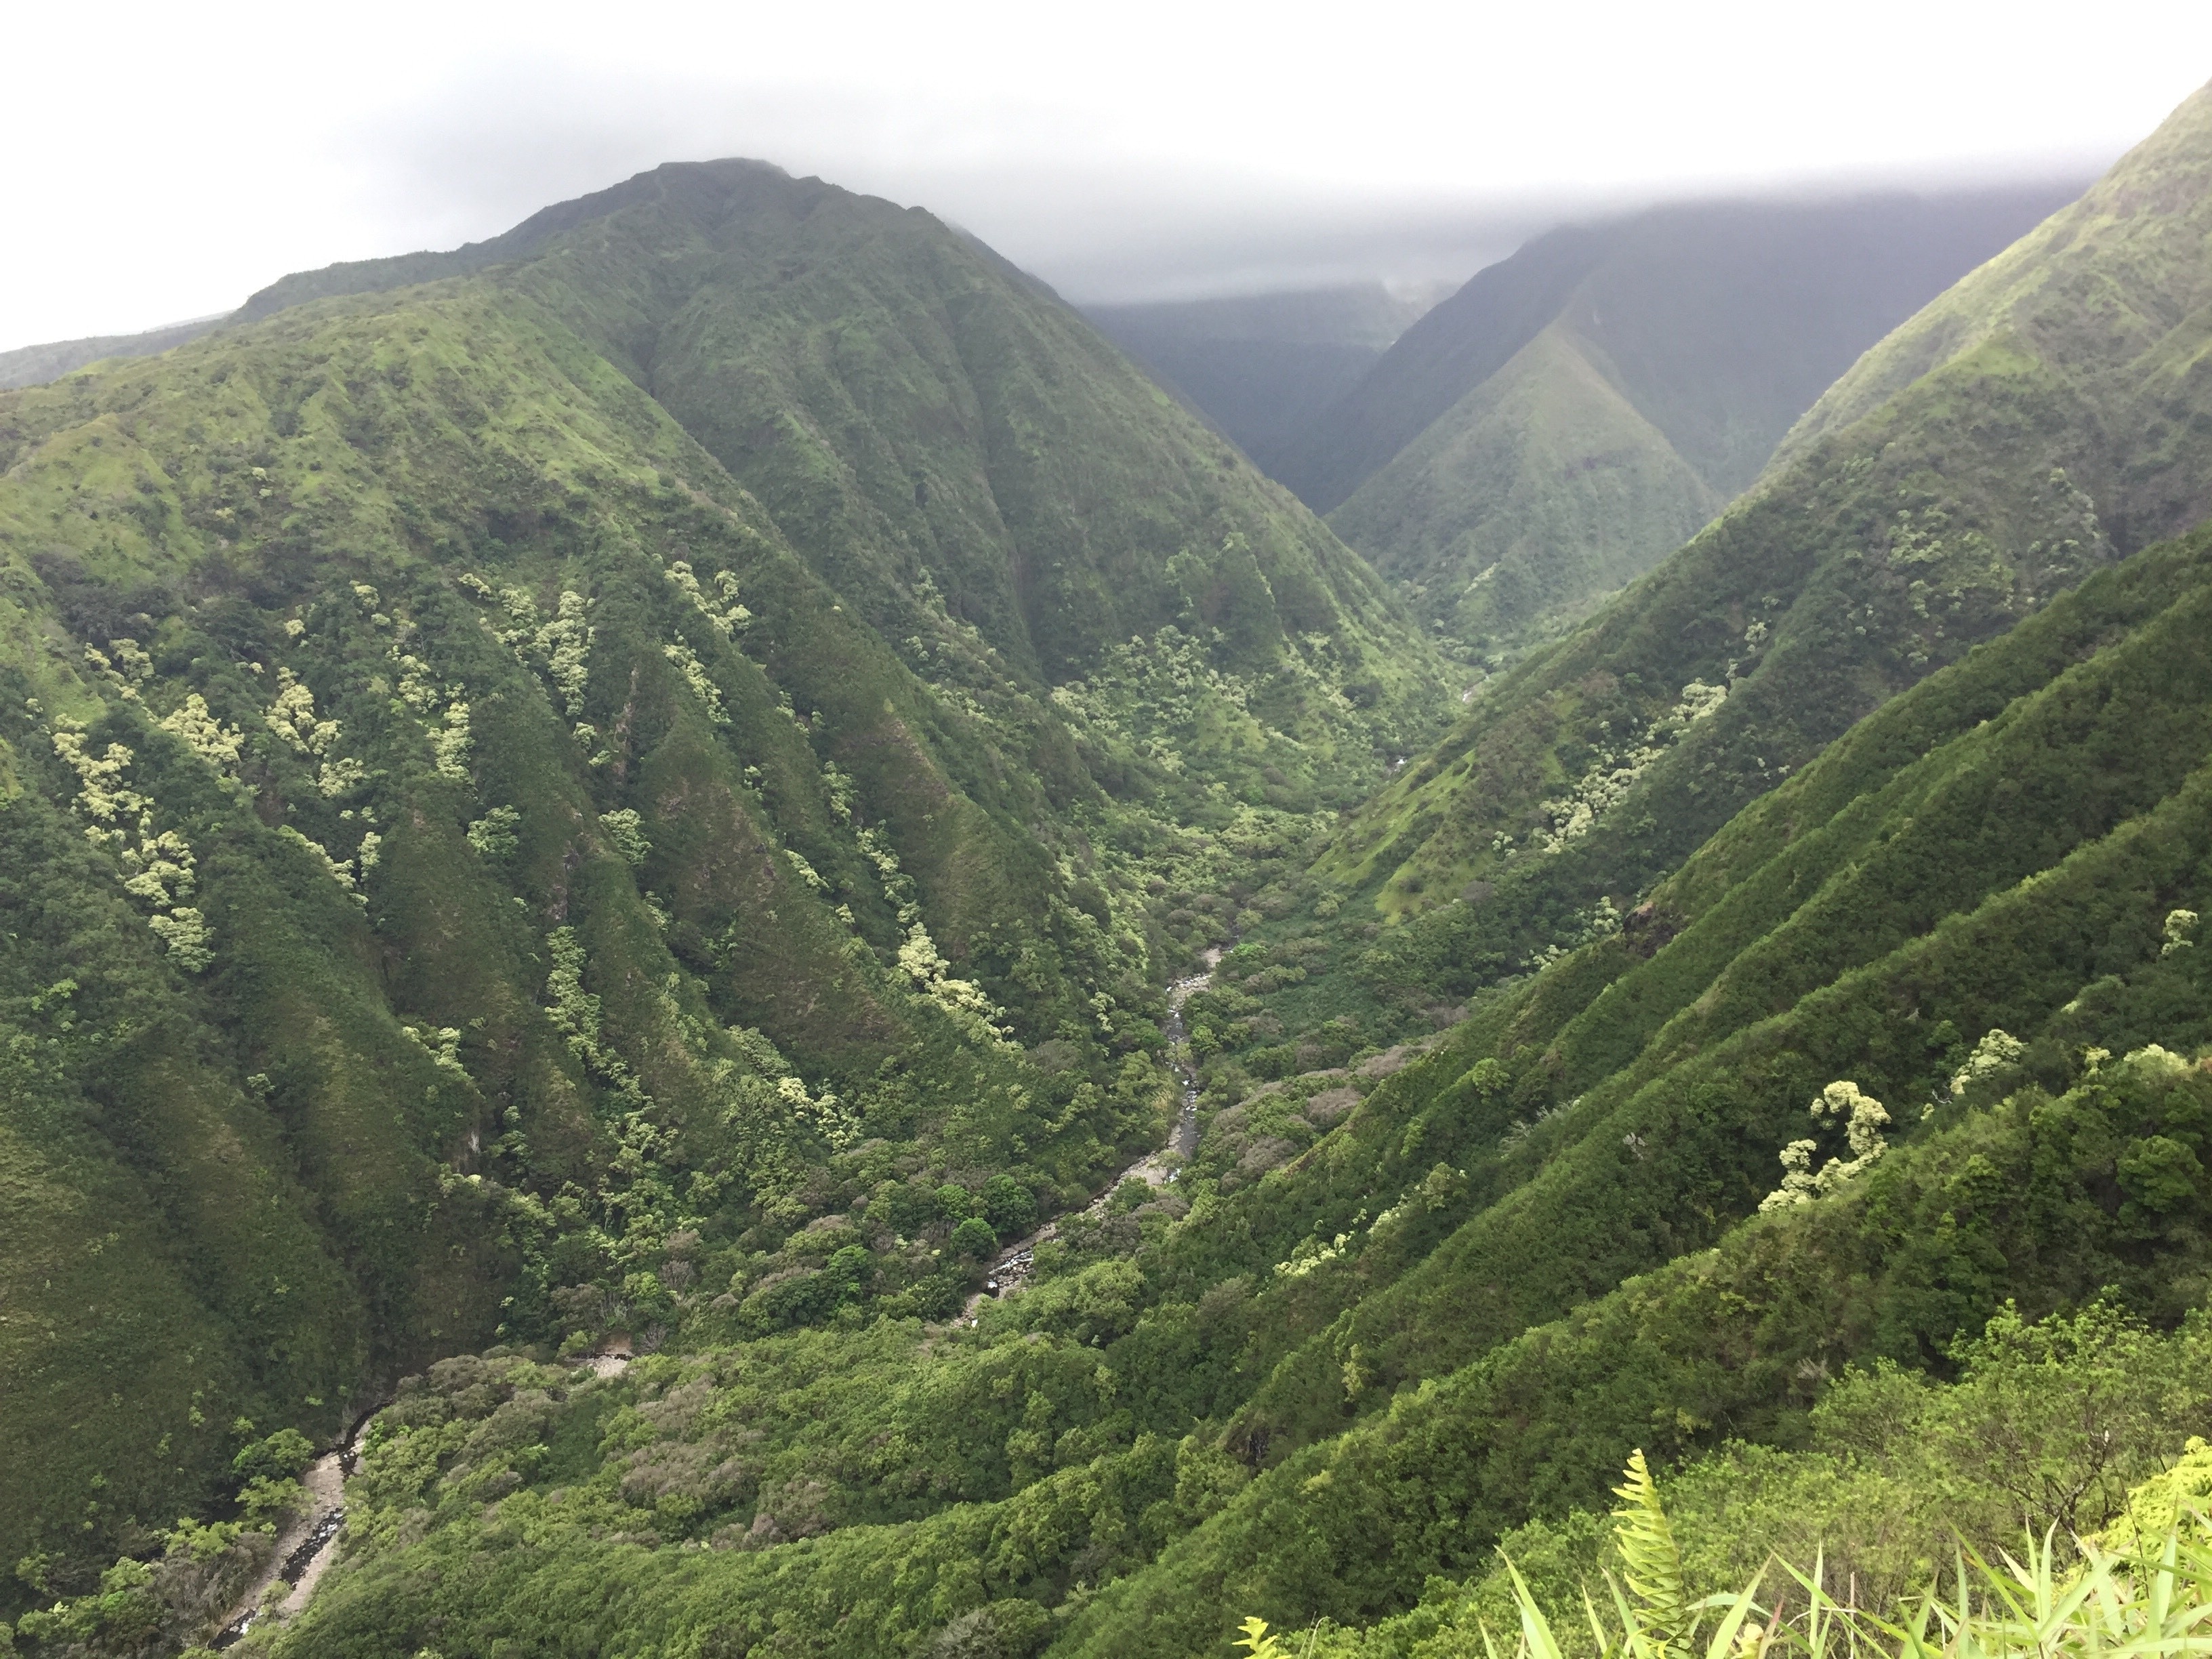 West Maui mountains